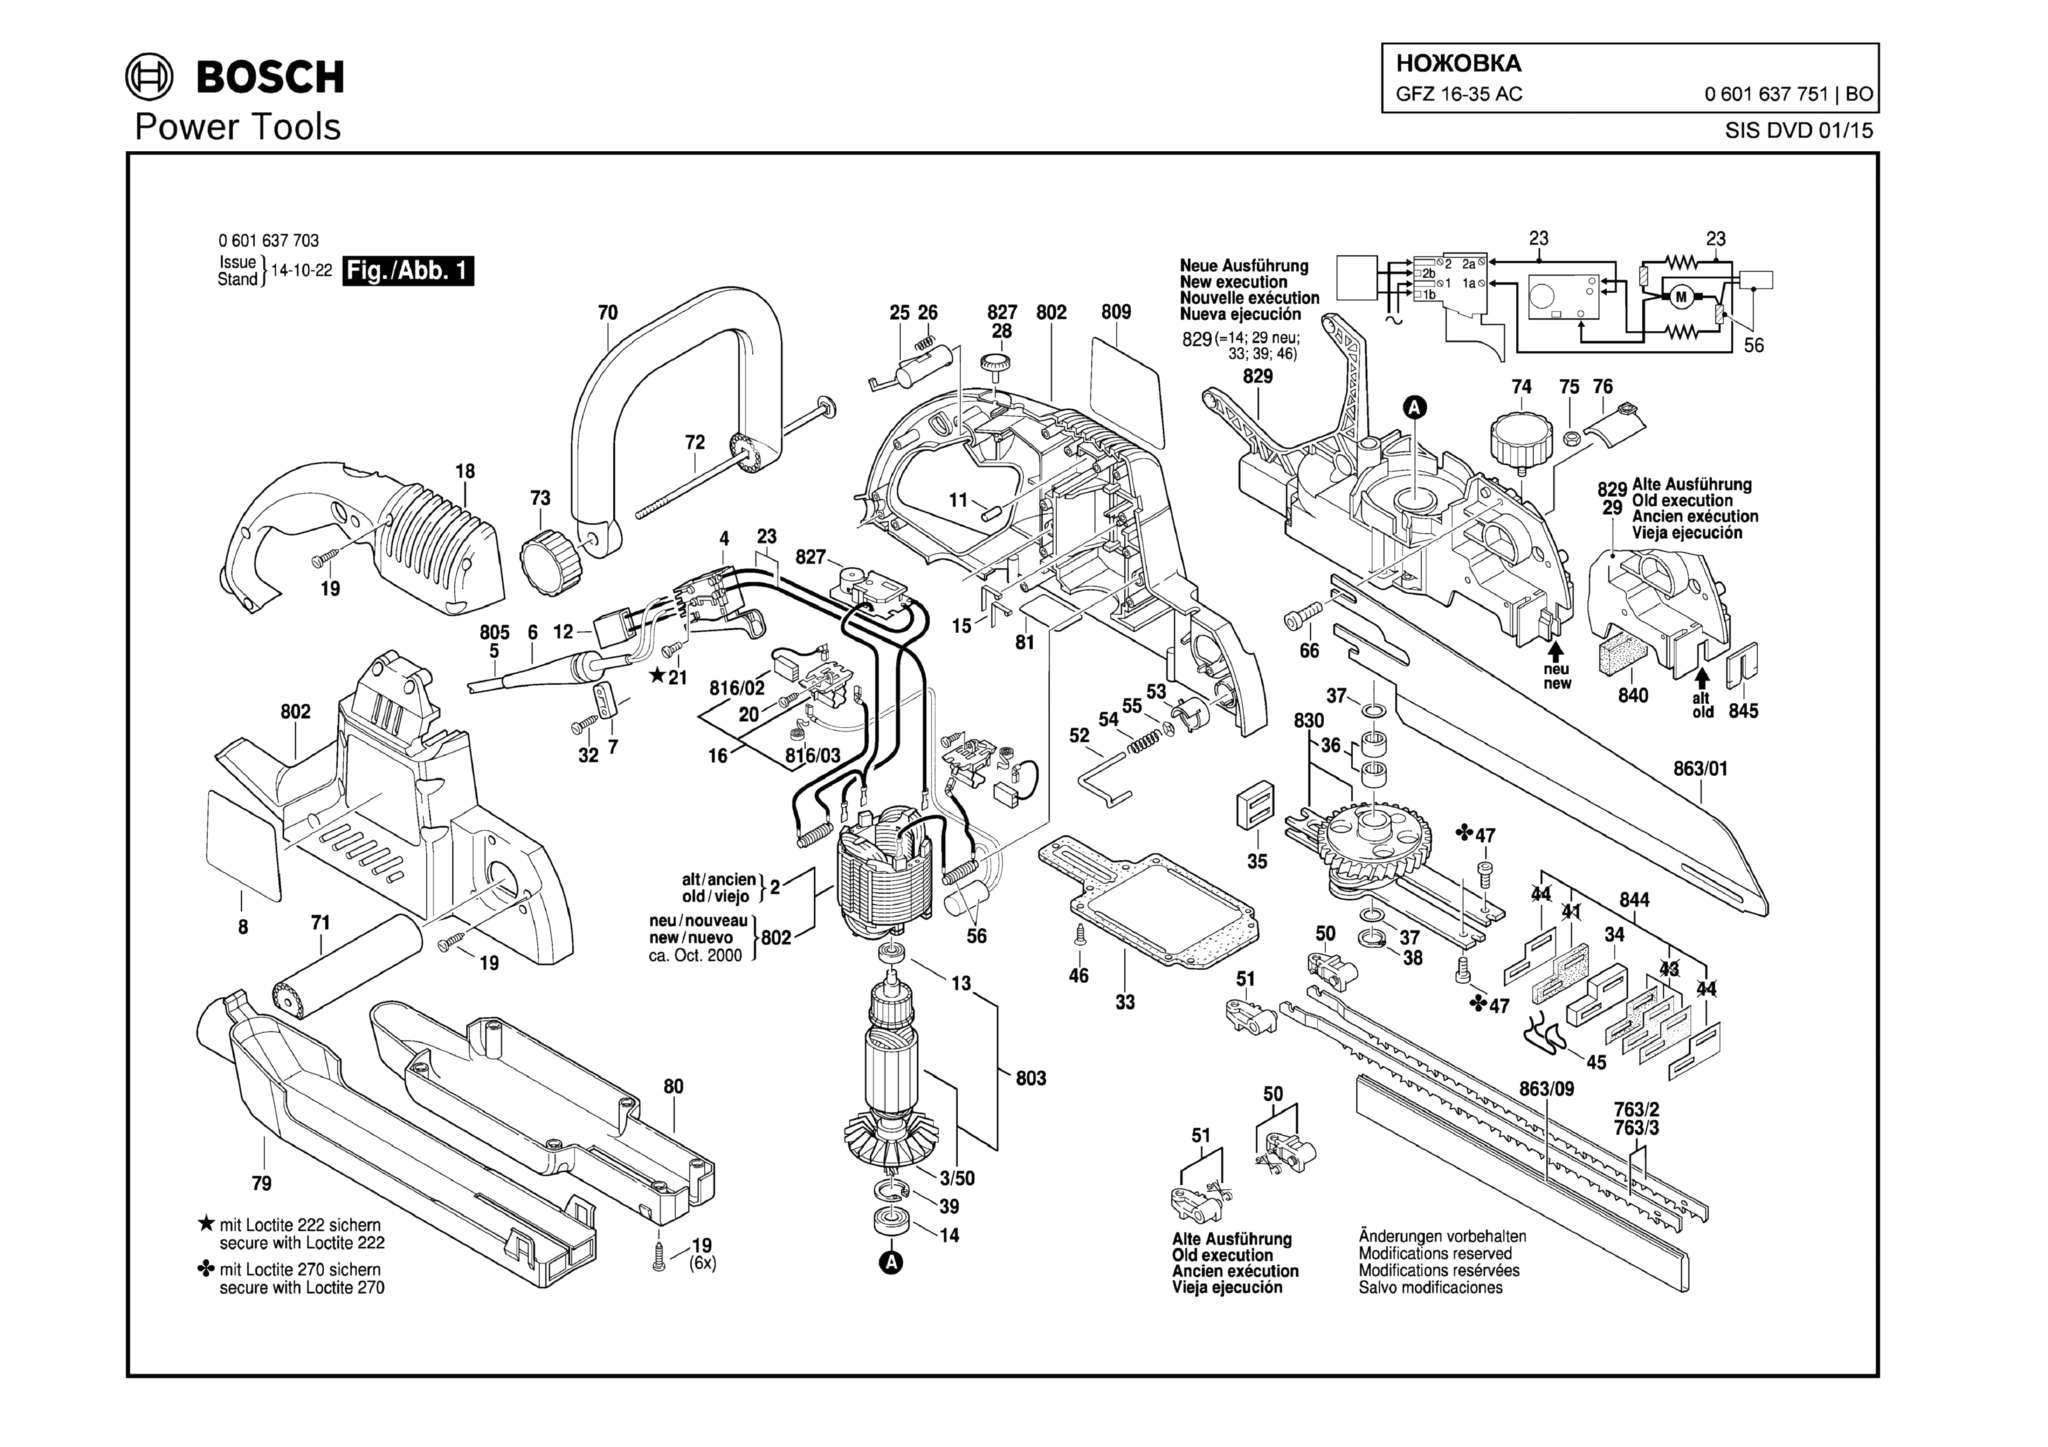 Запчасти, схема и деталировка Bosch GFZ 16-35 AC (ТИП 0601637751)